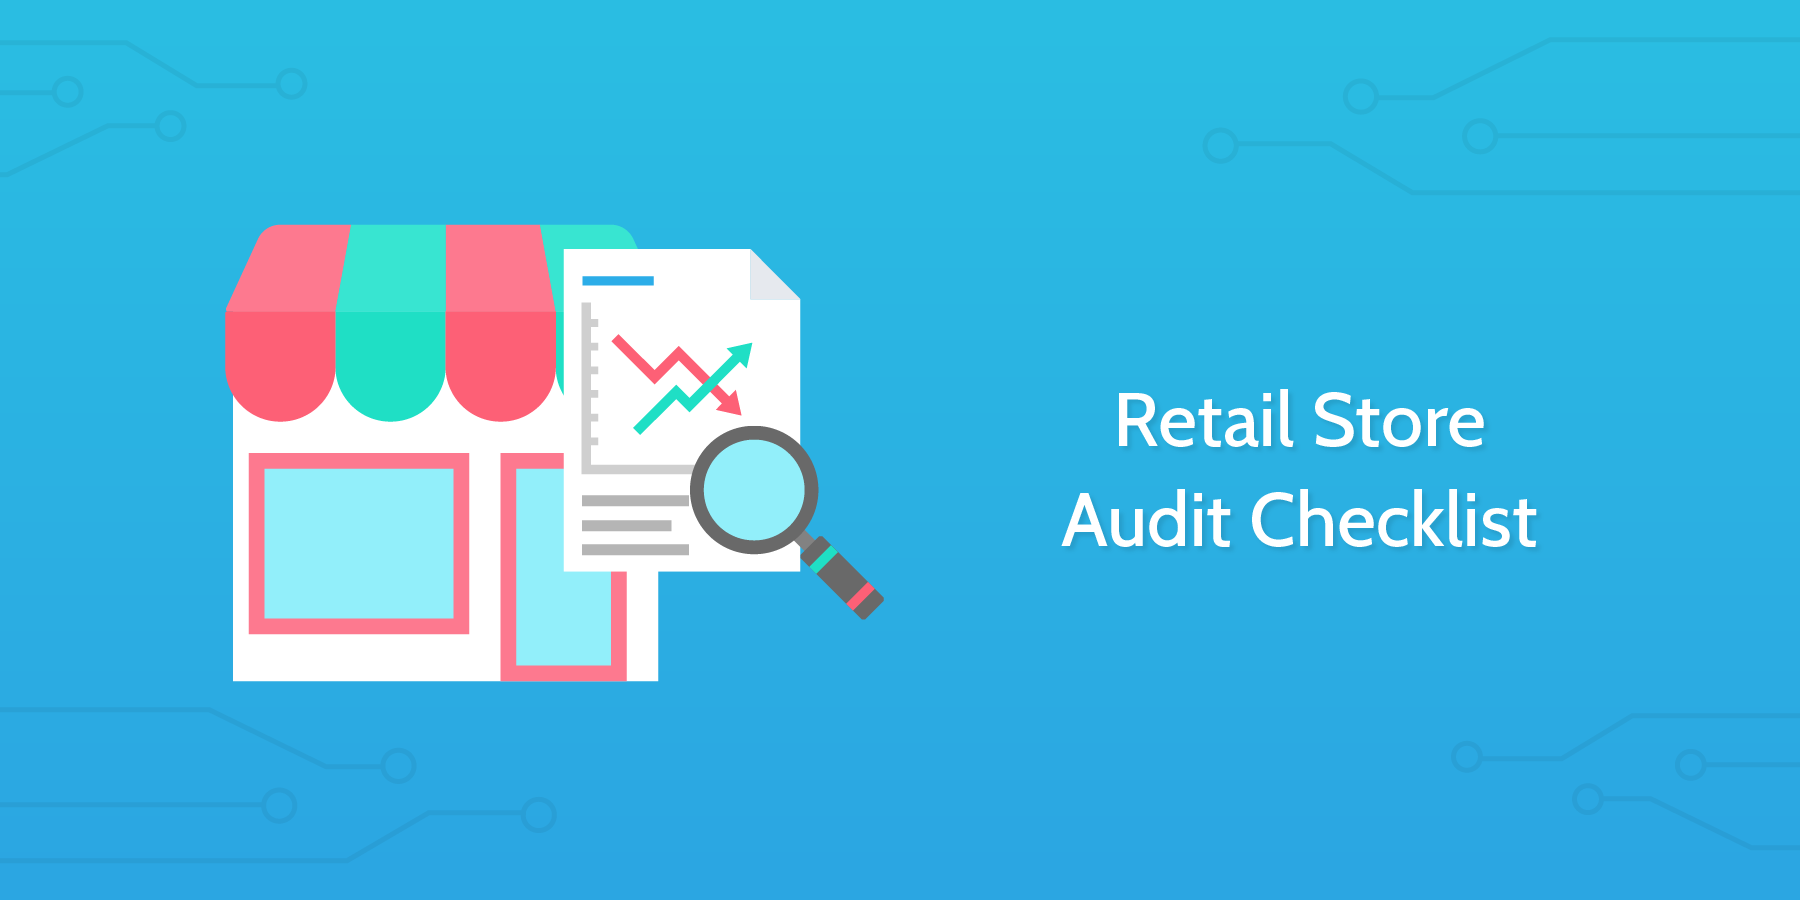 Retail Store Audit Checklist